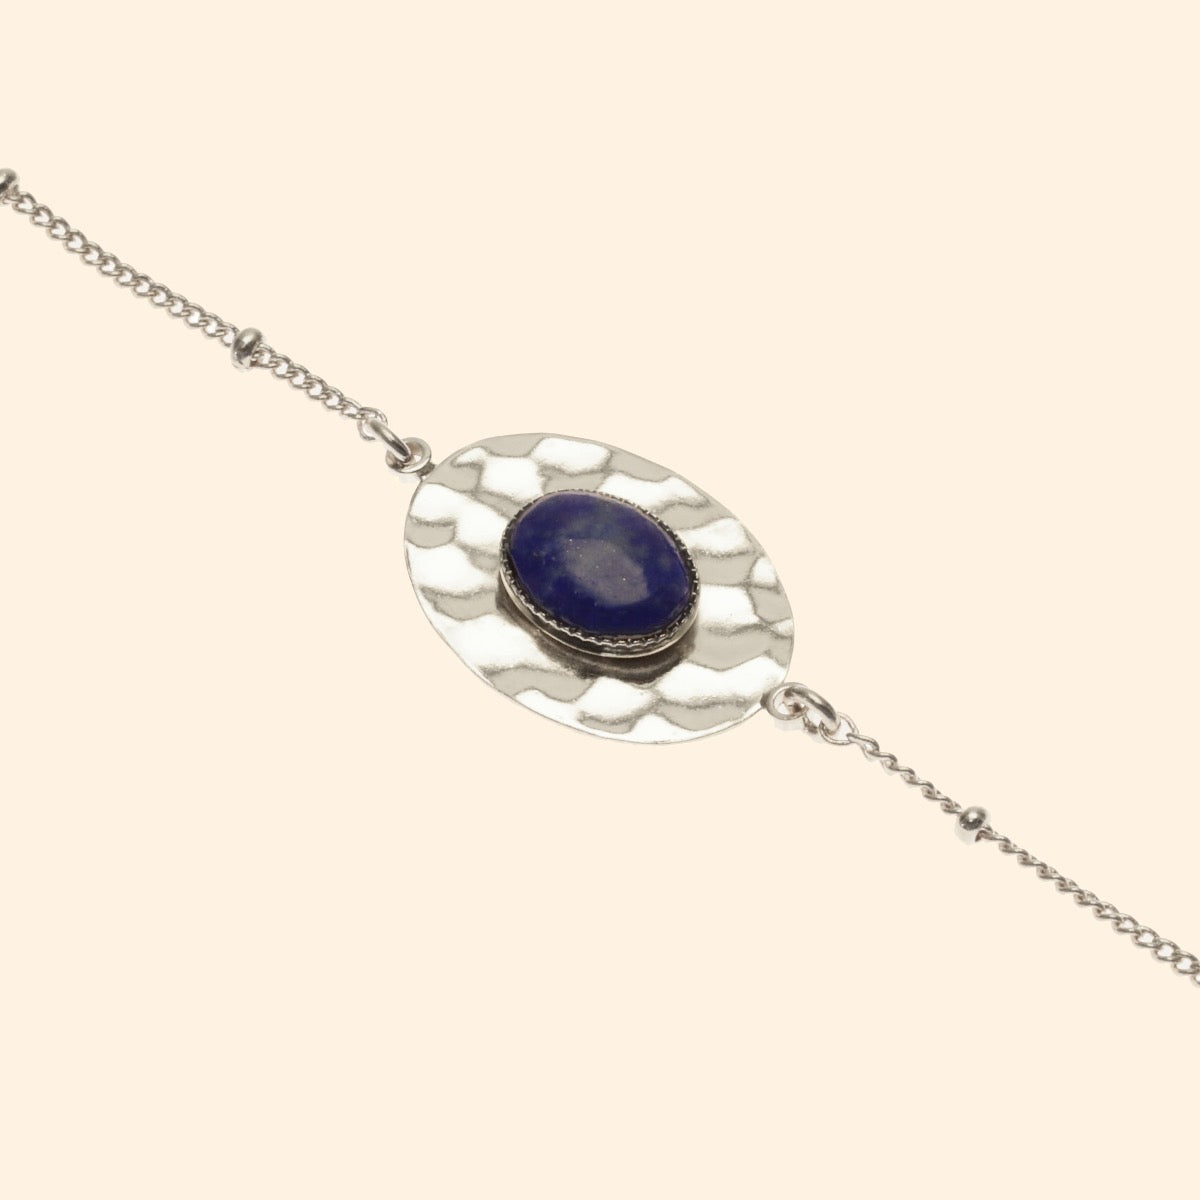 Bracelet martelée ajustable argent pierre lapis lazuli 